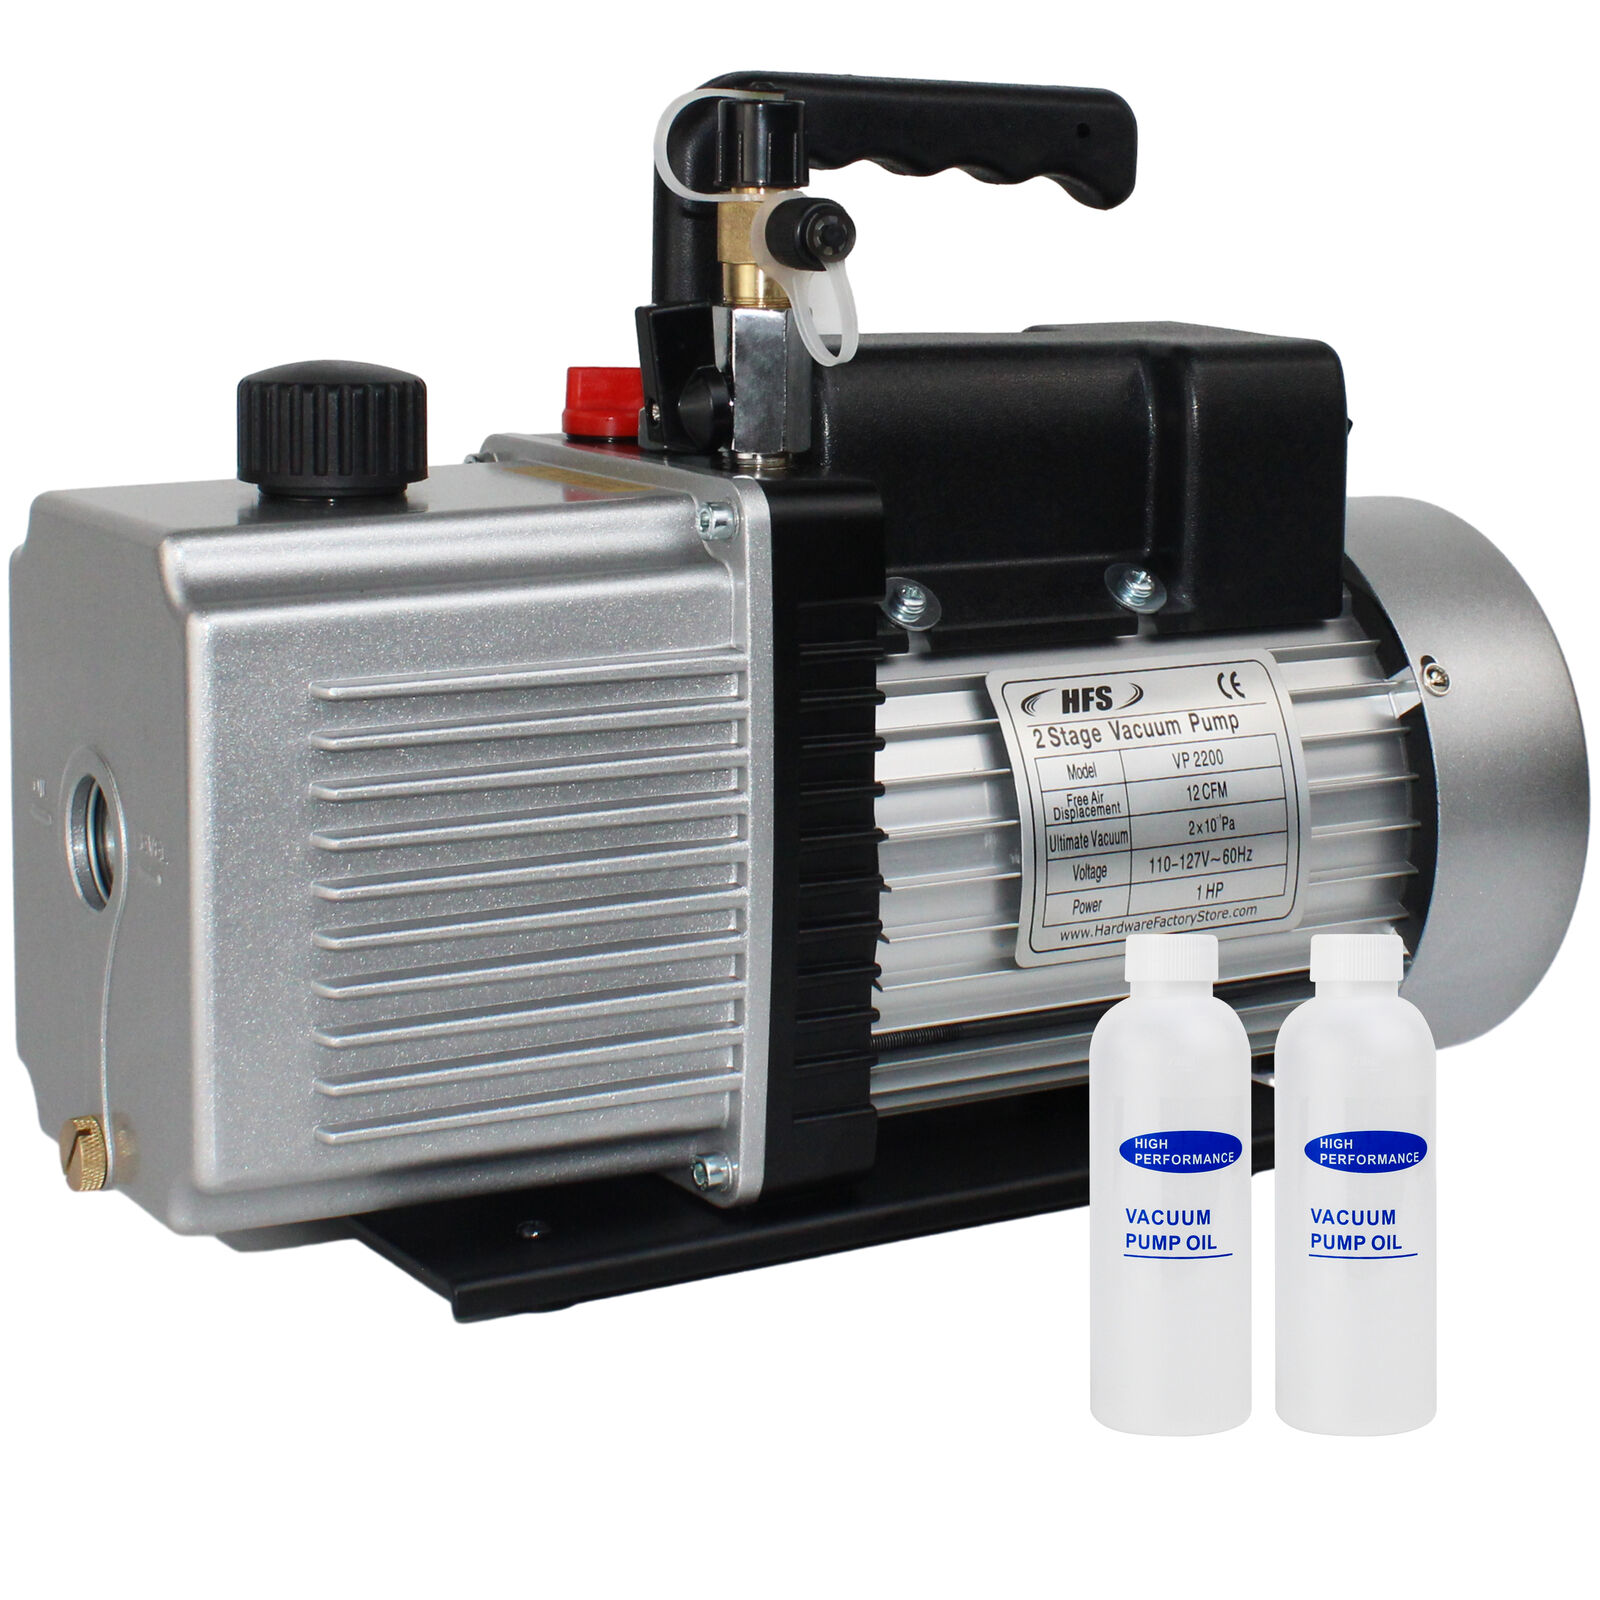 HFS(R) 2 Stage Vacuum Pump - 12 CFM, 1HP, 110V, 1/4